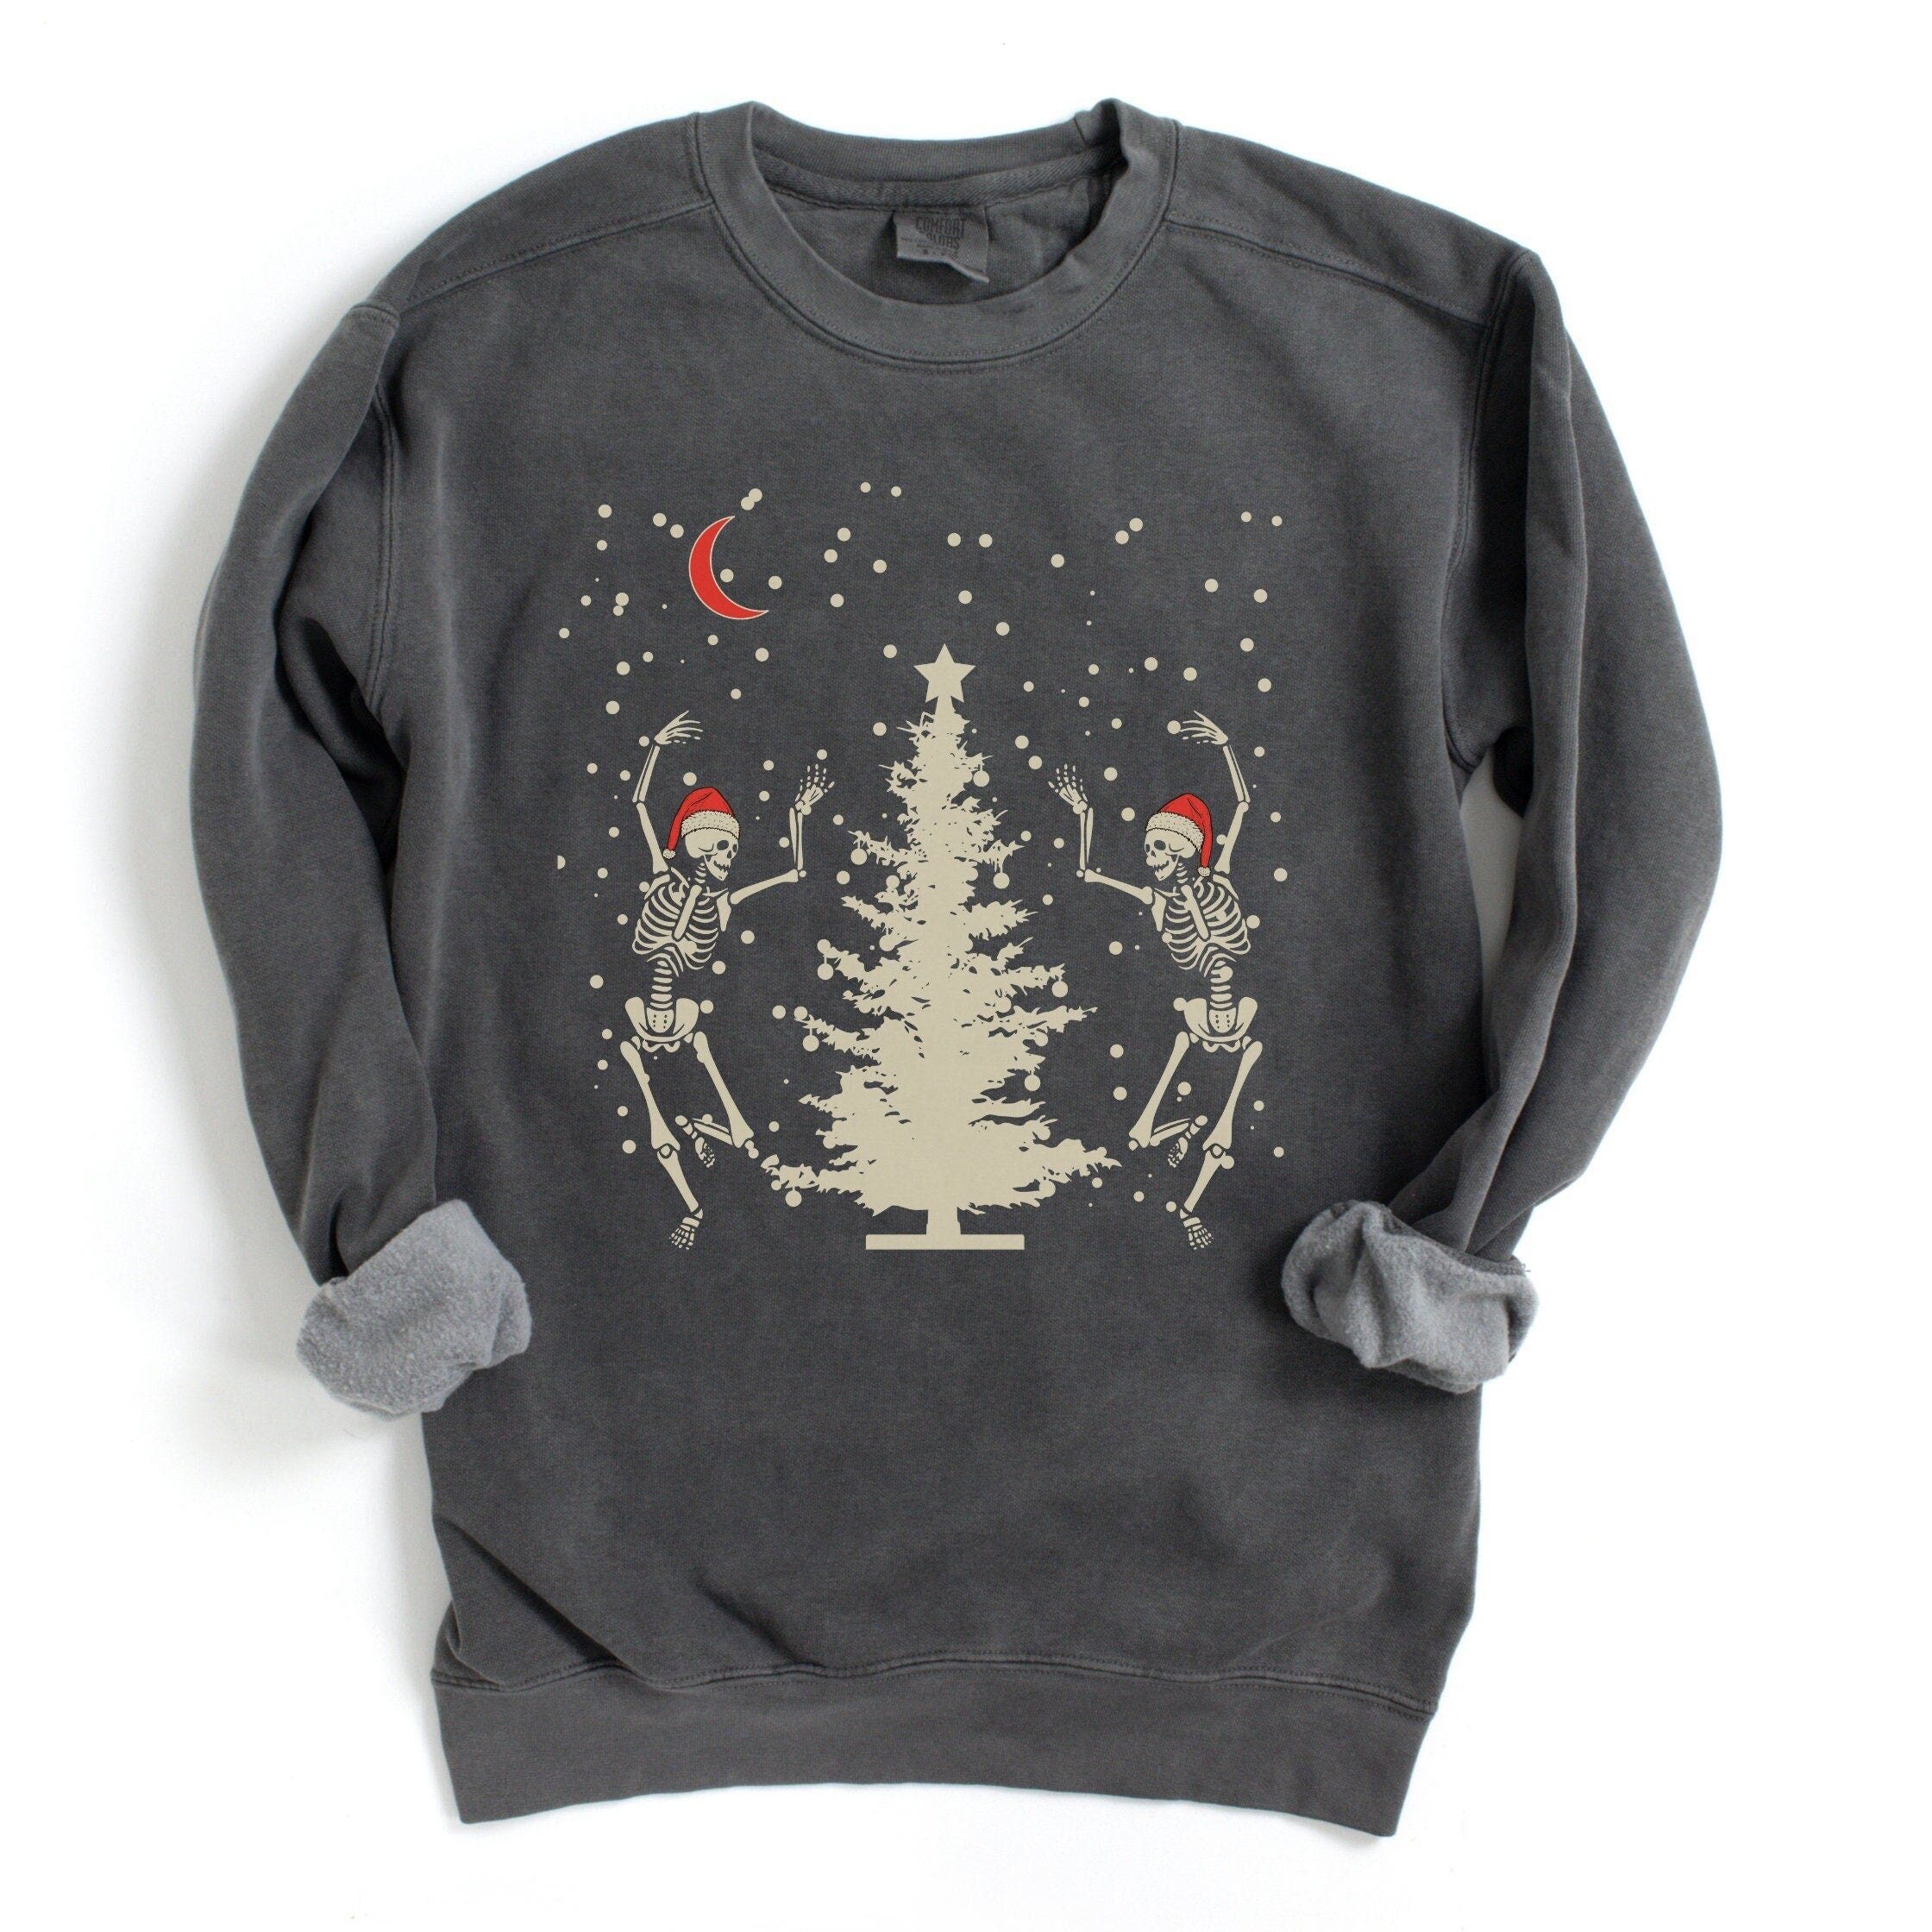 Comfort Colors® Sweatshirt, Comfort Colors Christmas Sweatshirt, Skeleton Christmas Sweatshirt, Goth Christmas Sweatshirt, Spooky Creepmas